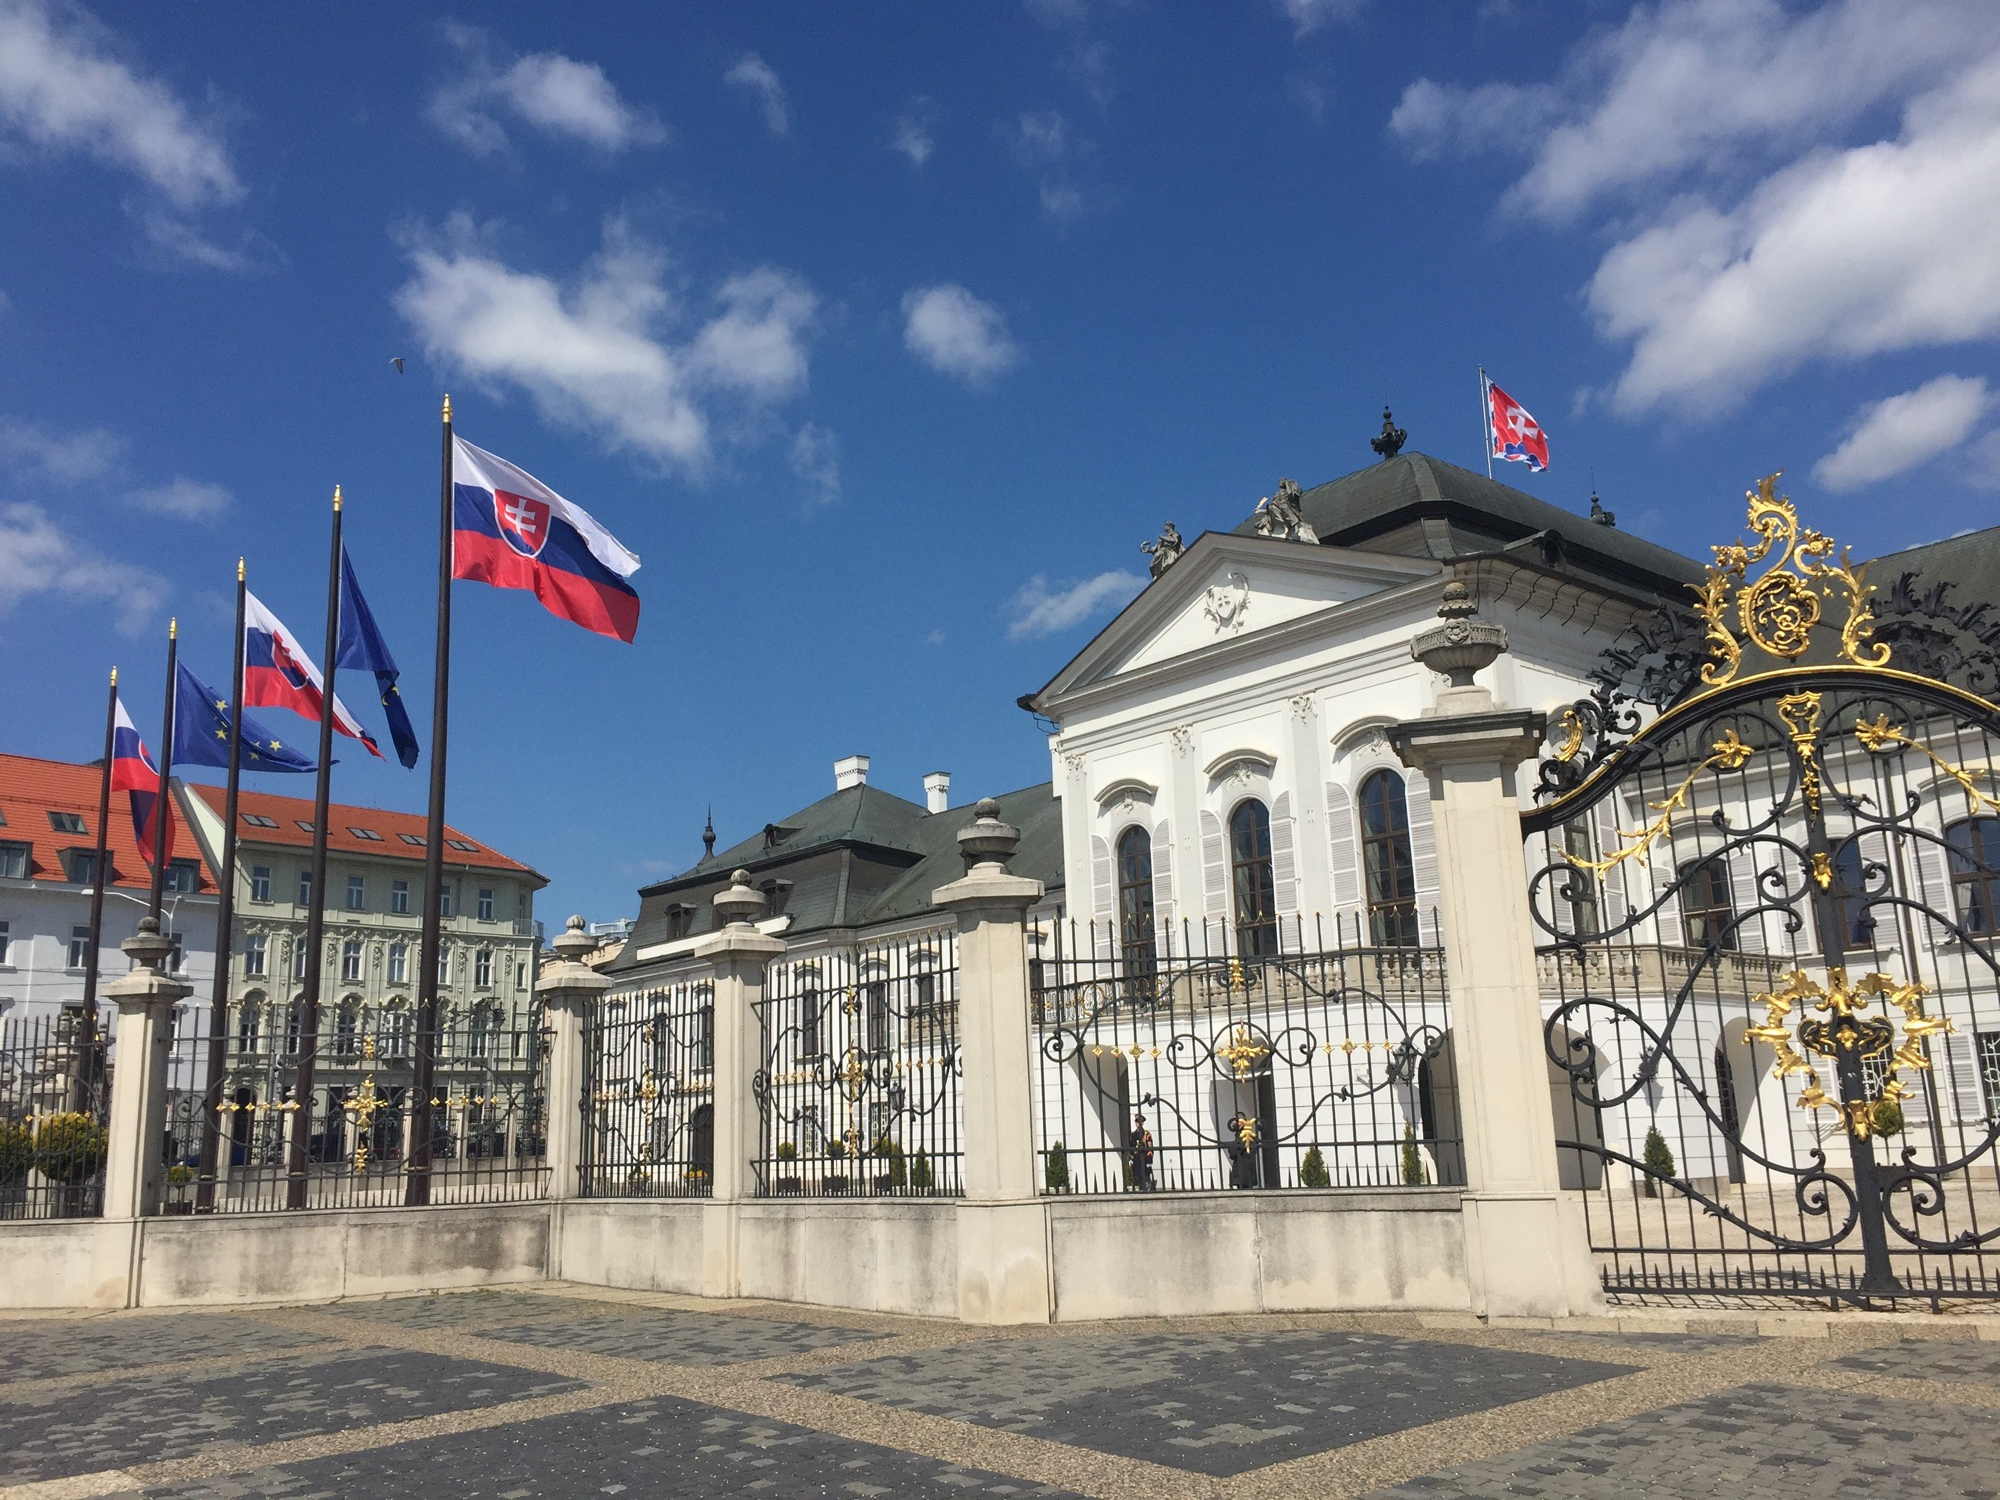 Palais Grassalkovich (Grasalkovičov palác), Residenz des Präsidenten der Slowakei, im Vordergrund Fahnen der Slowakei und der EU